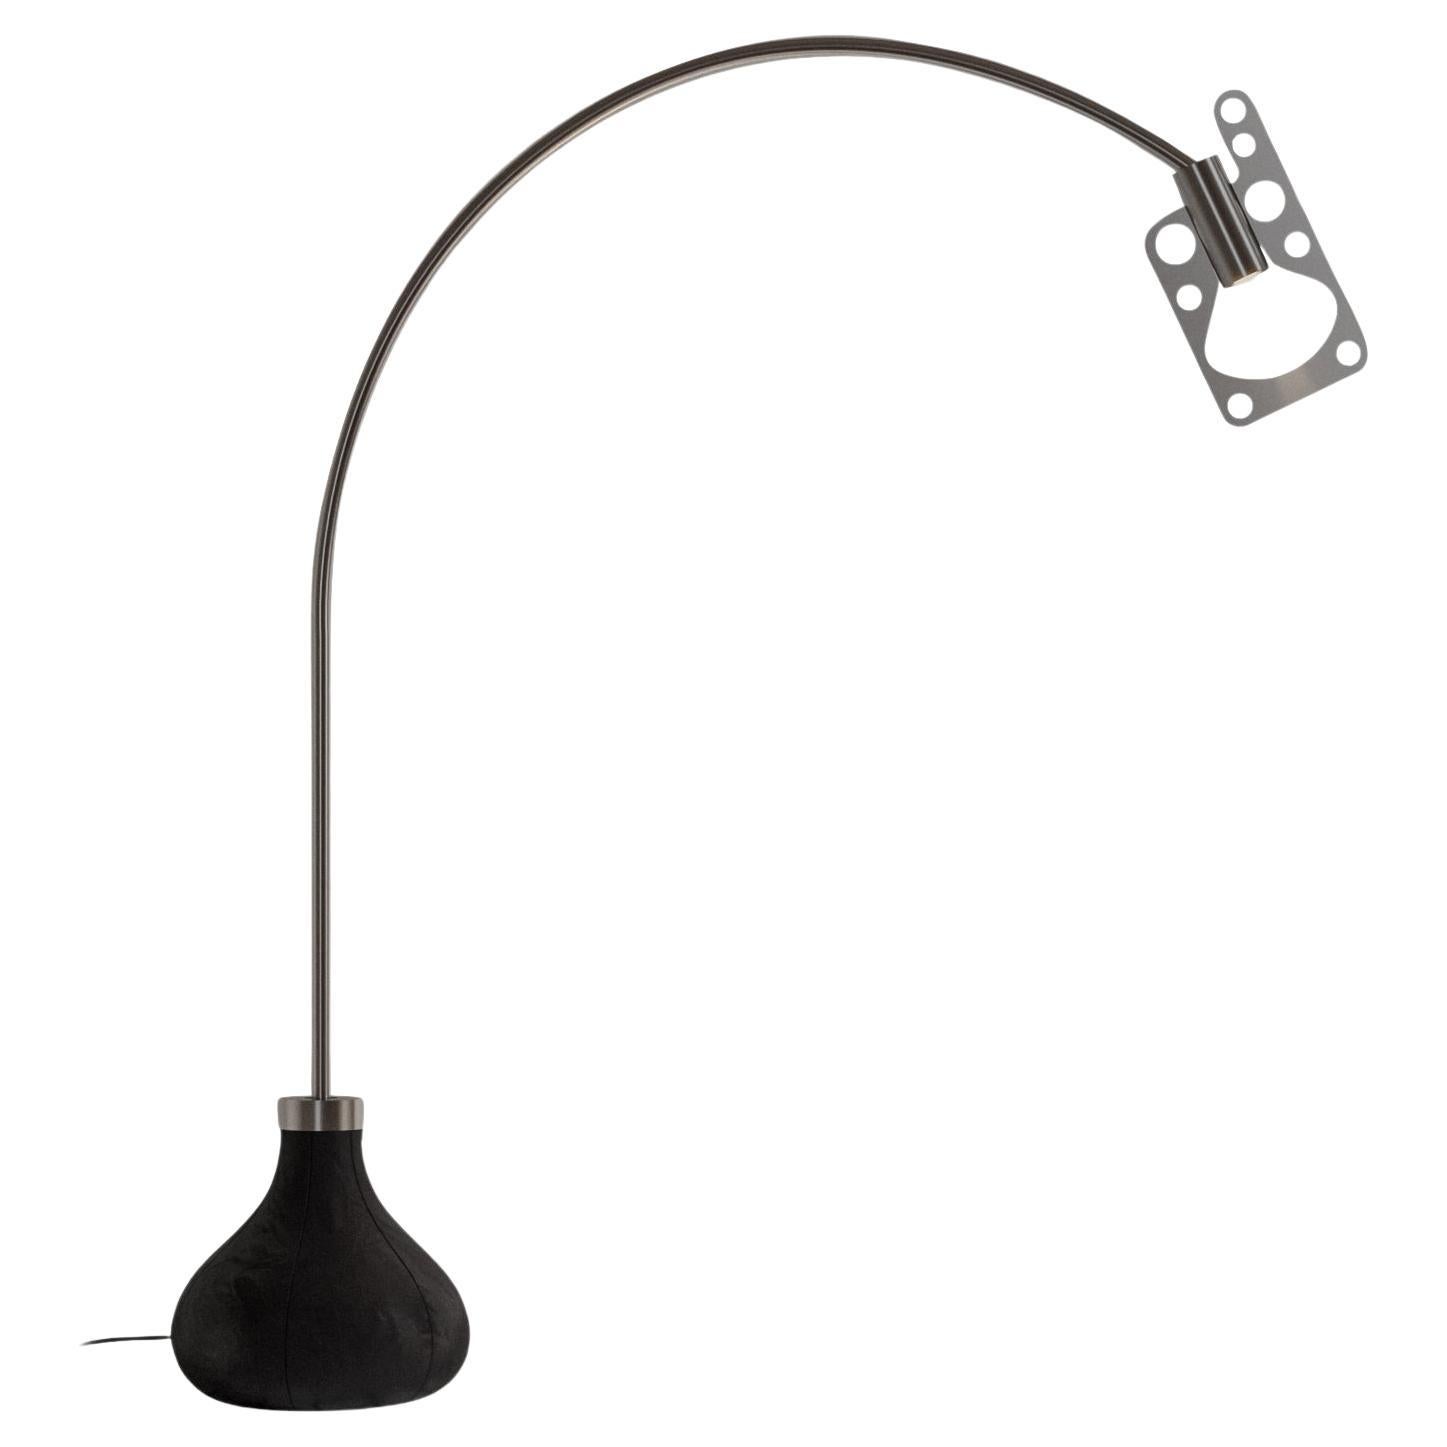 Axolight Bul-Bo Mini Table Lamp in Black Metal and Fabric For Sale